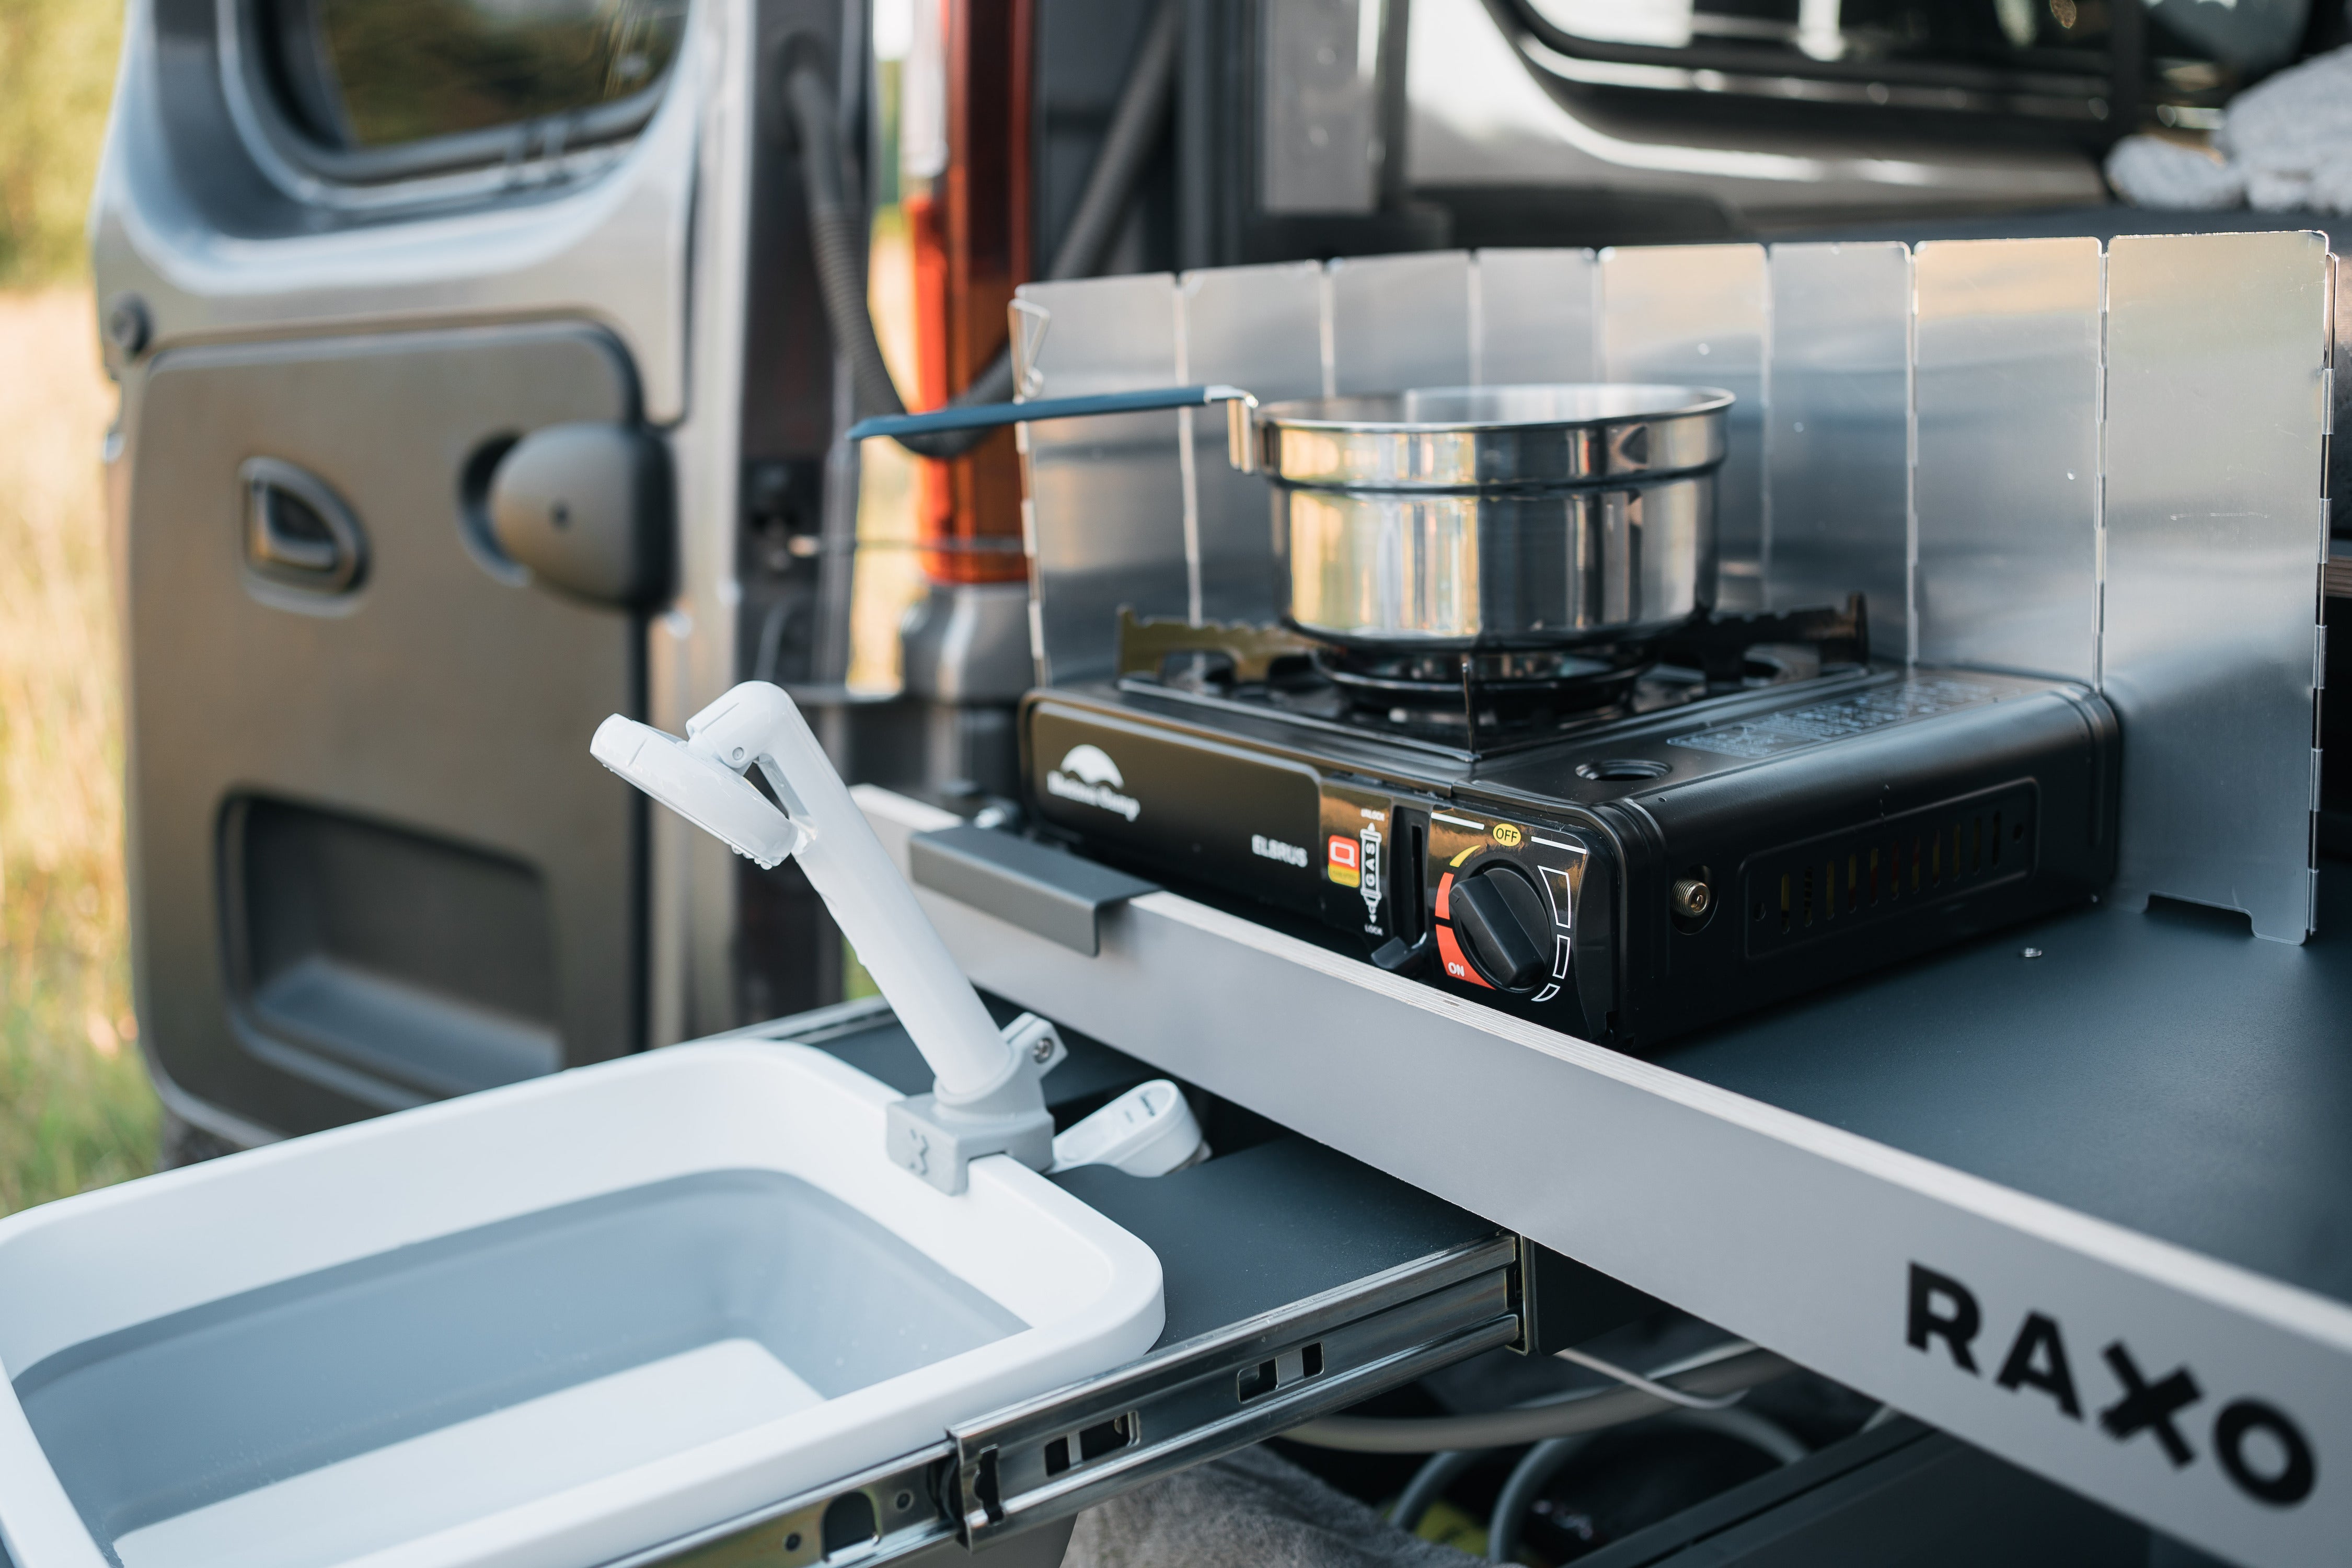 RAXO Base Campervan Module - Förvandla din bil till en bekväm och funktionell husbil